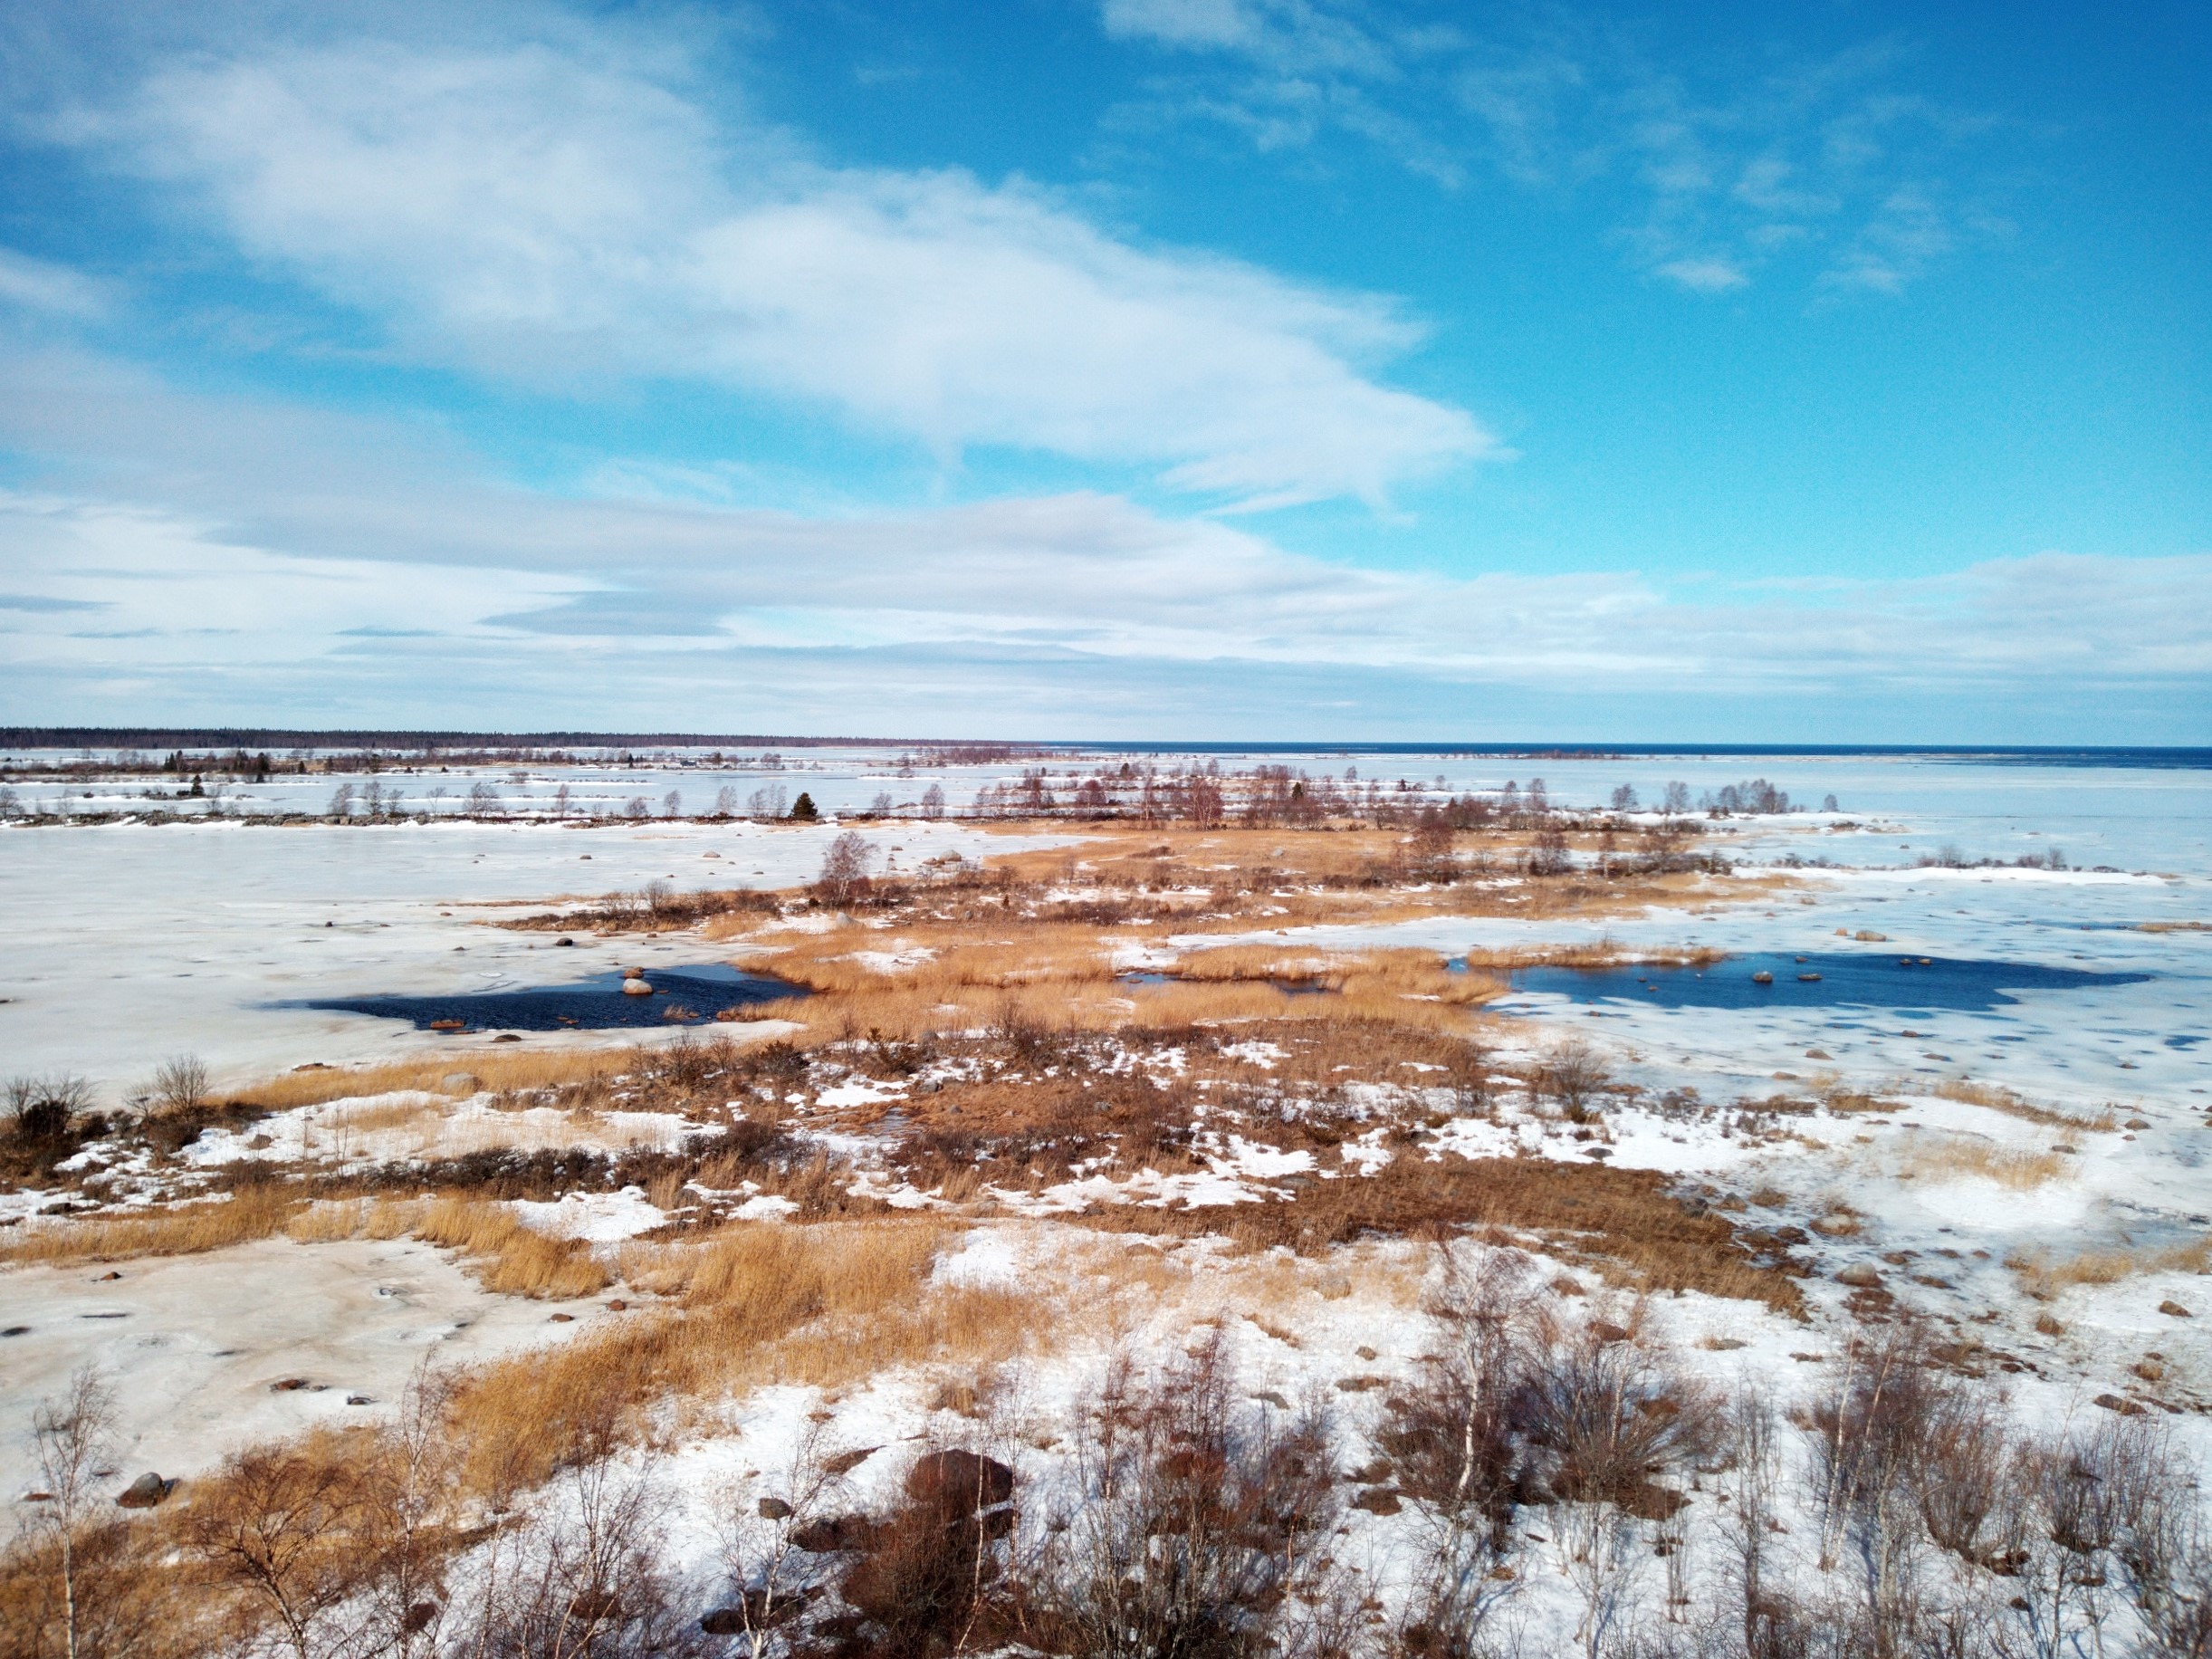 Talvinen maisema Svedjehamnista Merenkurkun saaristosta, jossa meri on jäässä ja kapeita ja pitkiä saaria peittää lumi.